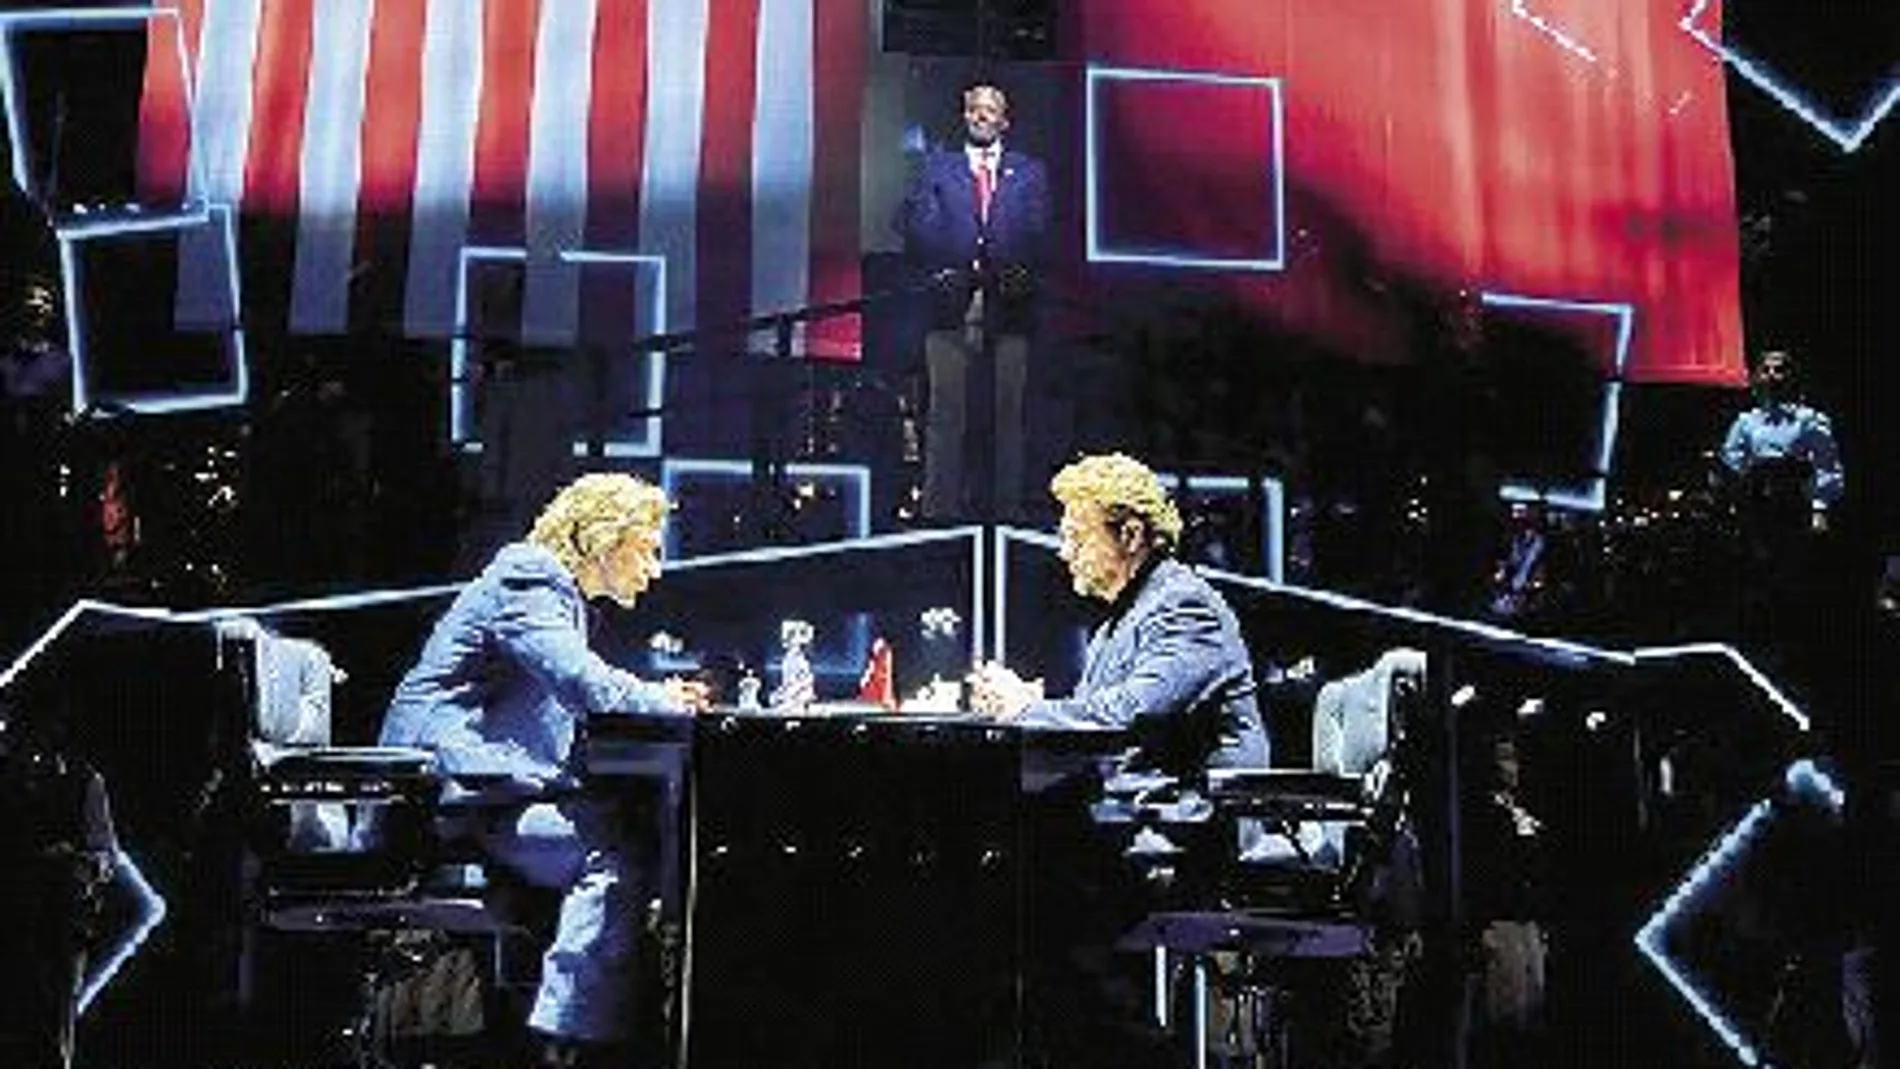 «Chess» es la obra teatral que se puede ver en escena en la English National Opera (ENO) desde finales de abril.